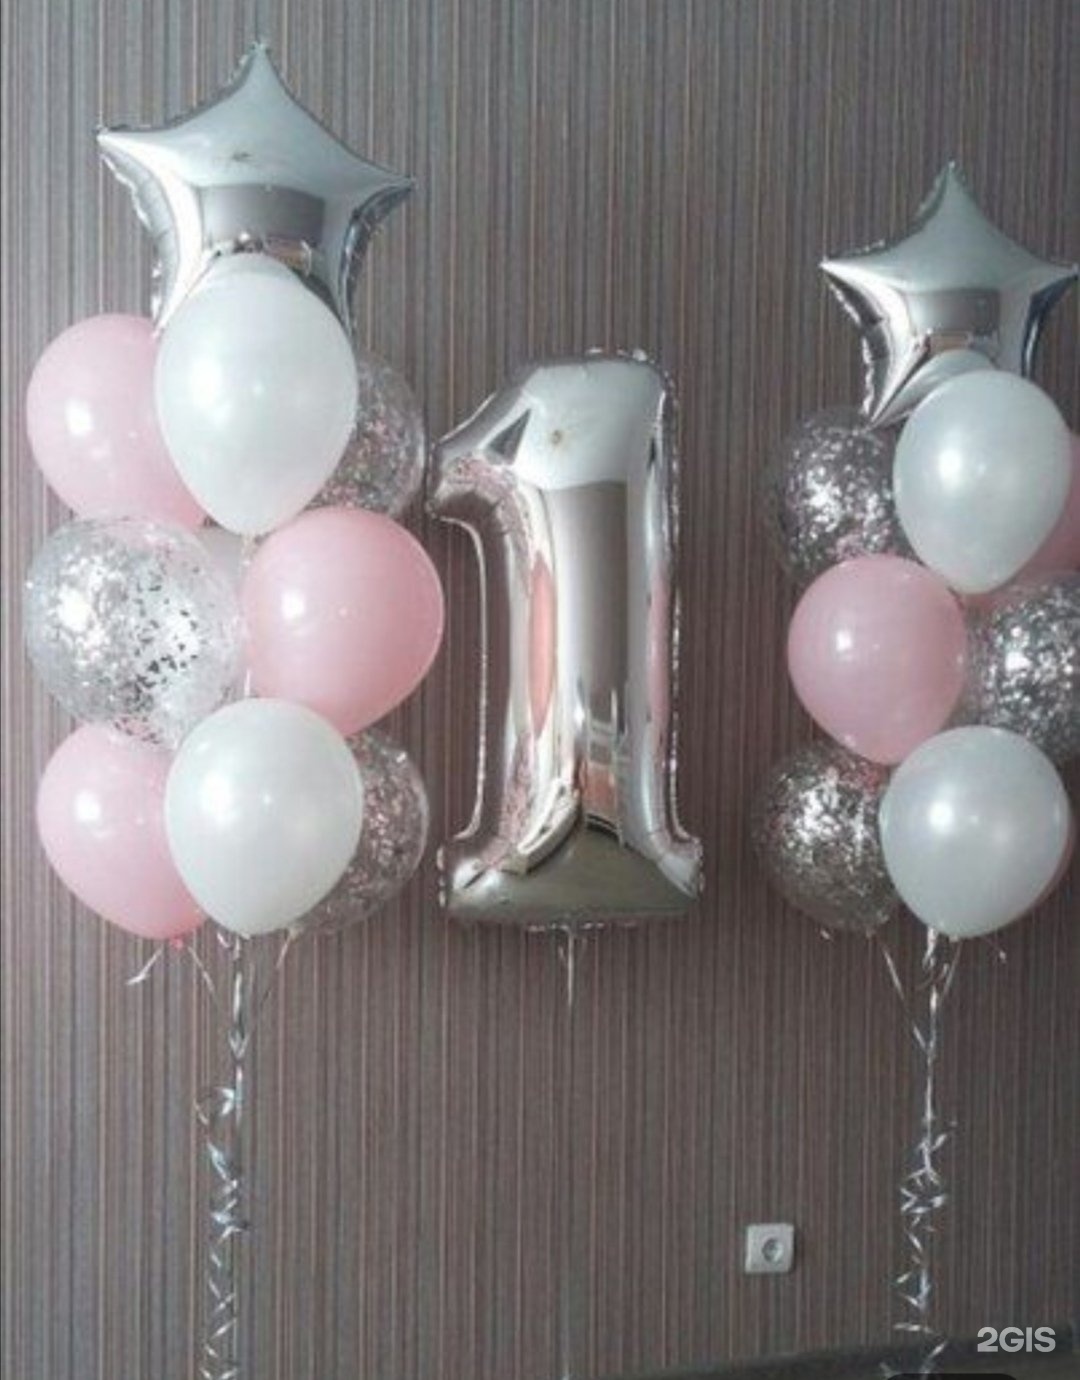 шары на день рождения девочке 1 год